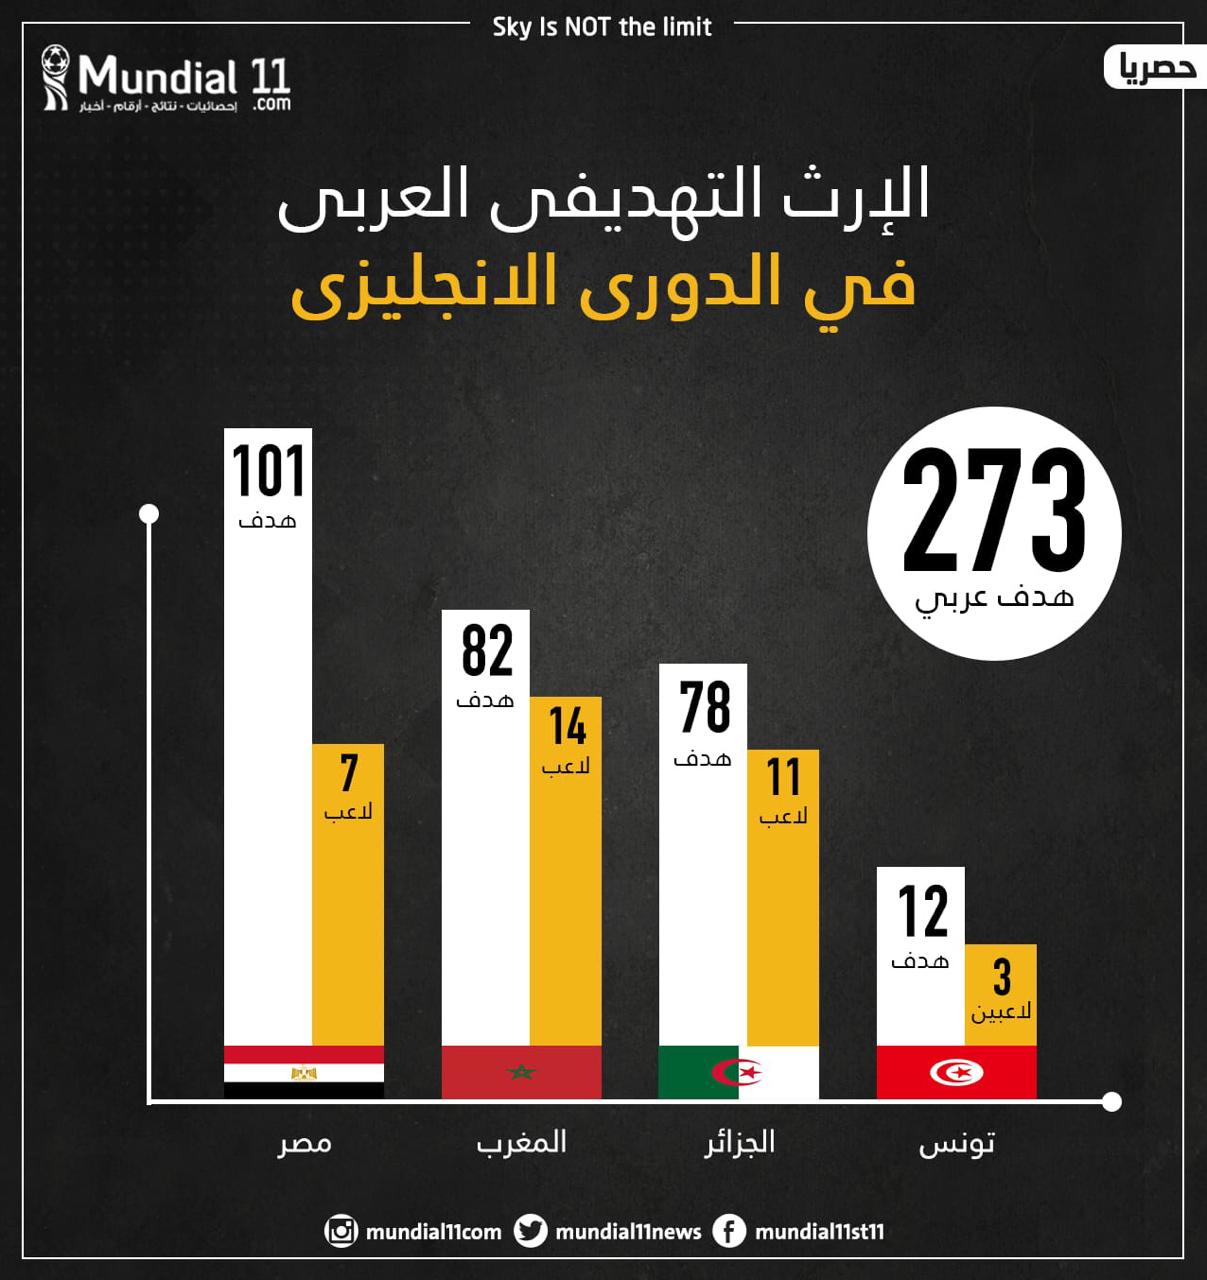 نجوم المغرب ثاني أفضل الهدافين العرب في البرميرليغ